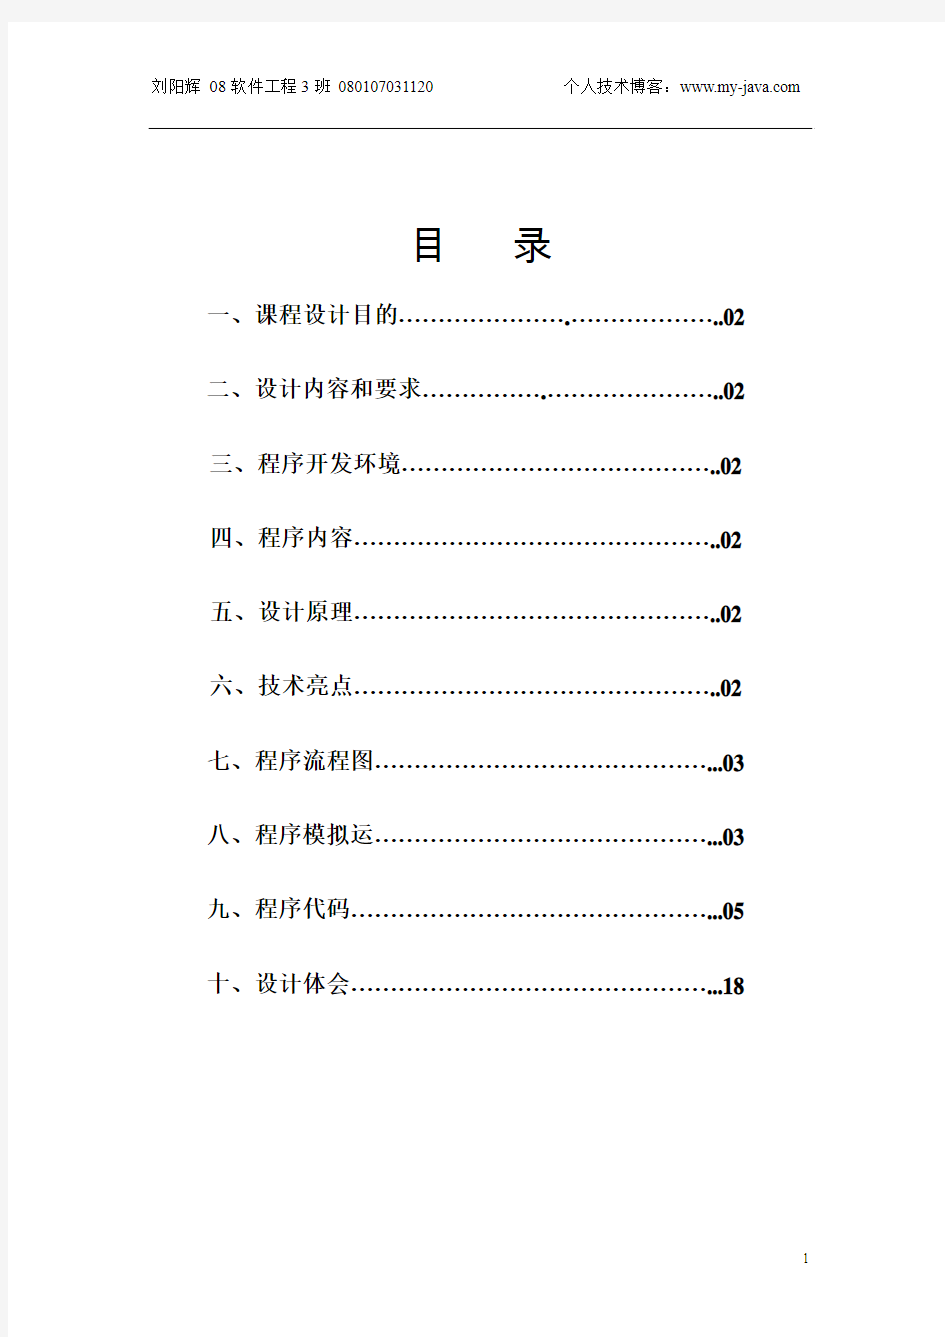 排序算法比较_java课程设计_刘阳辉